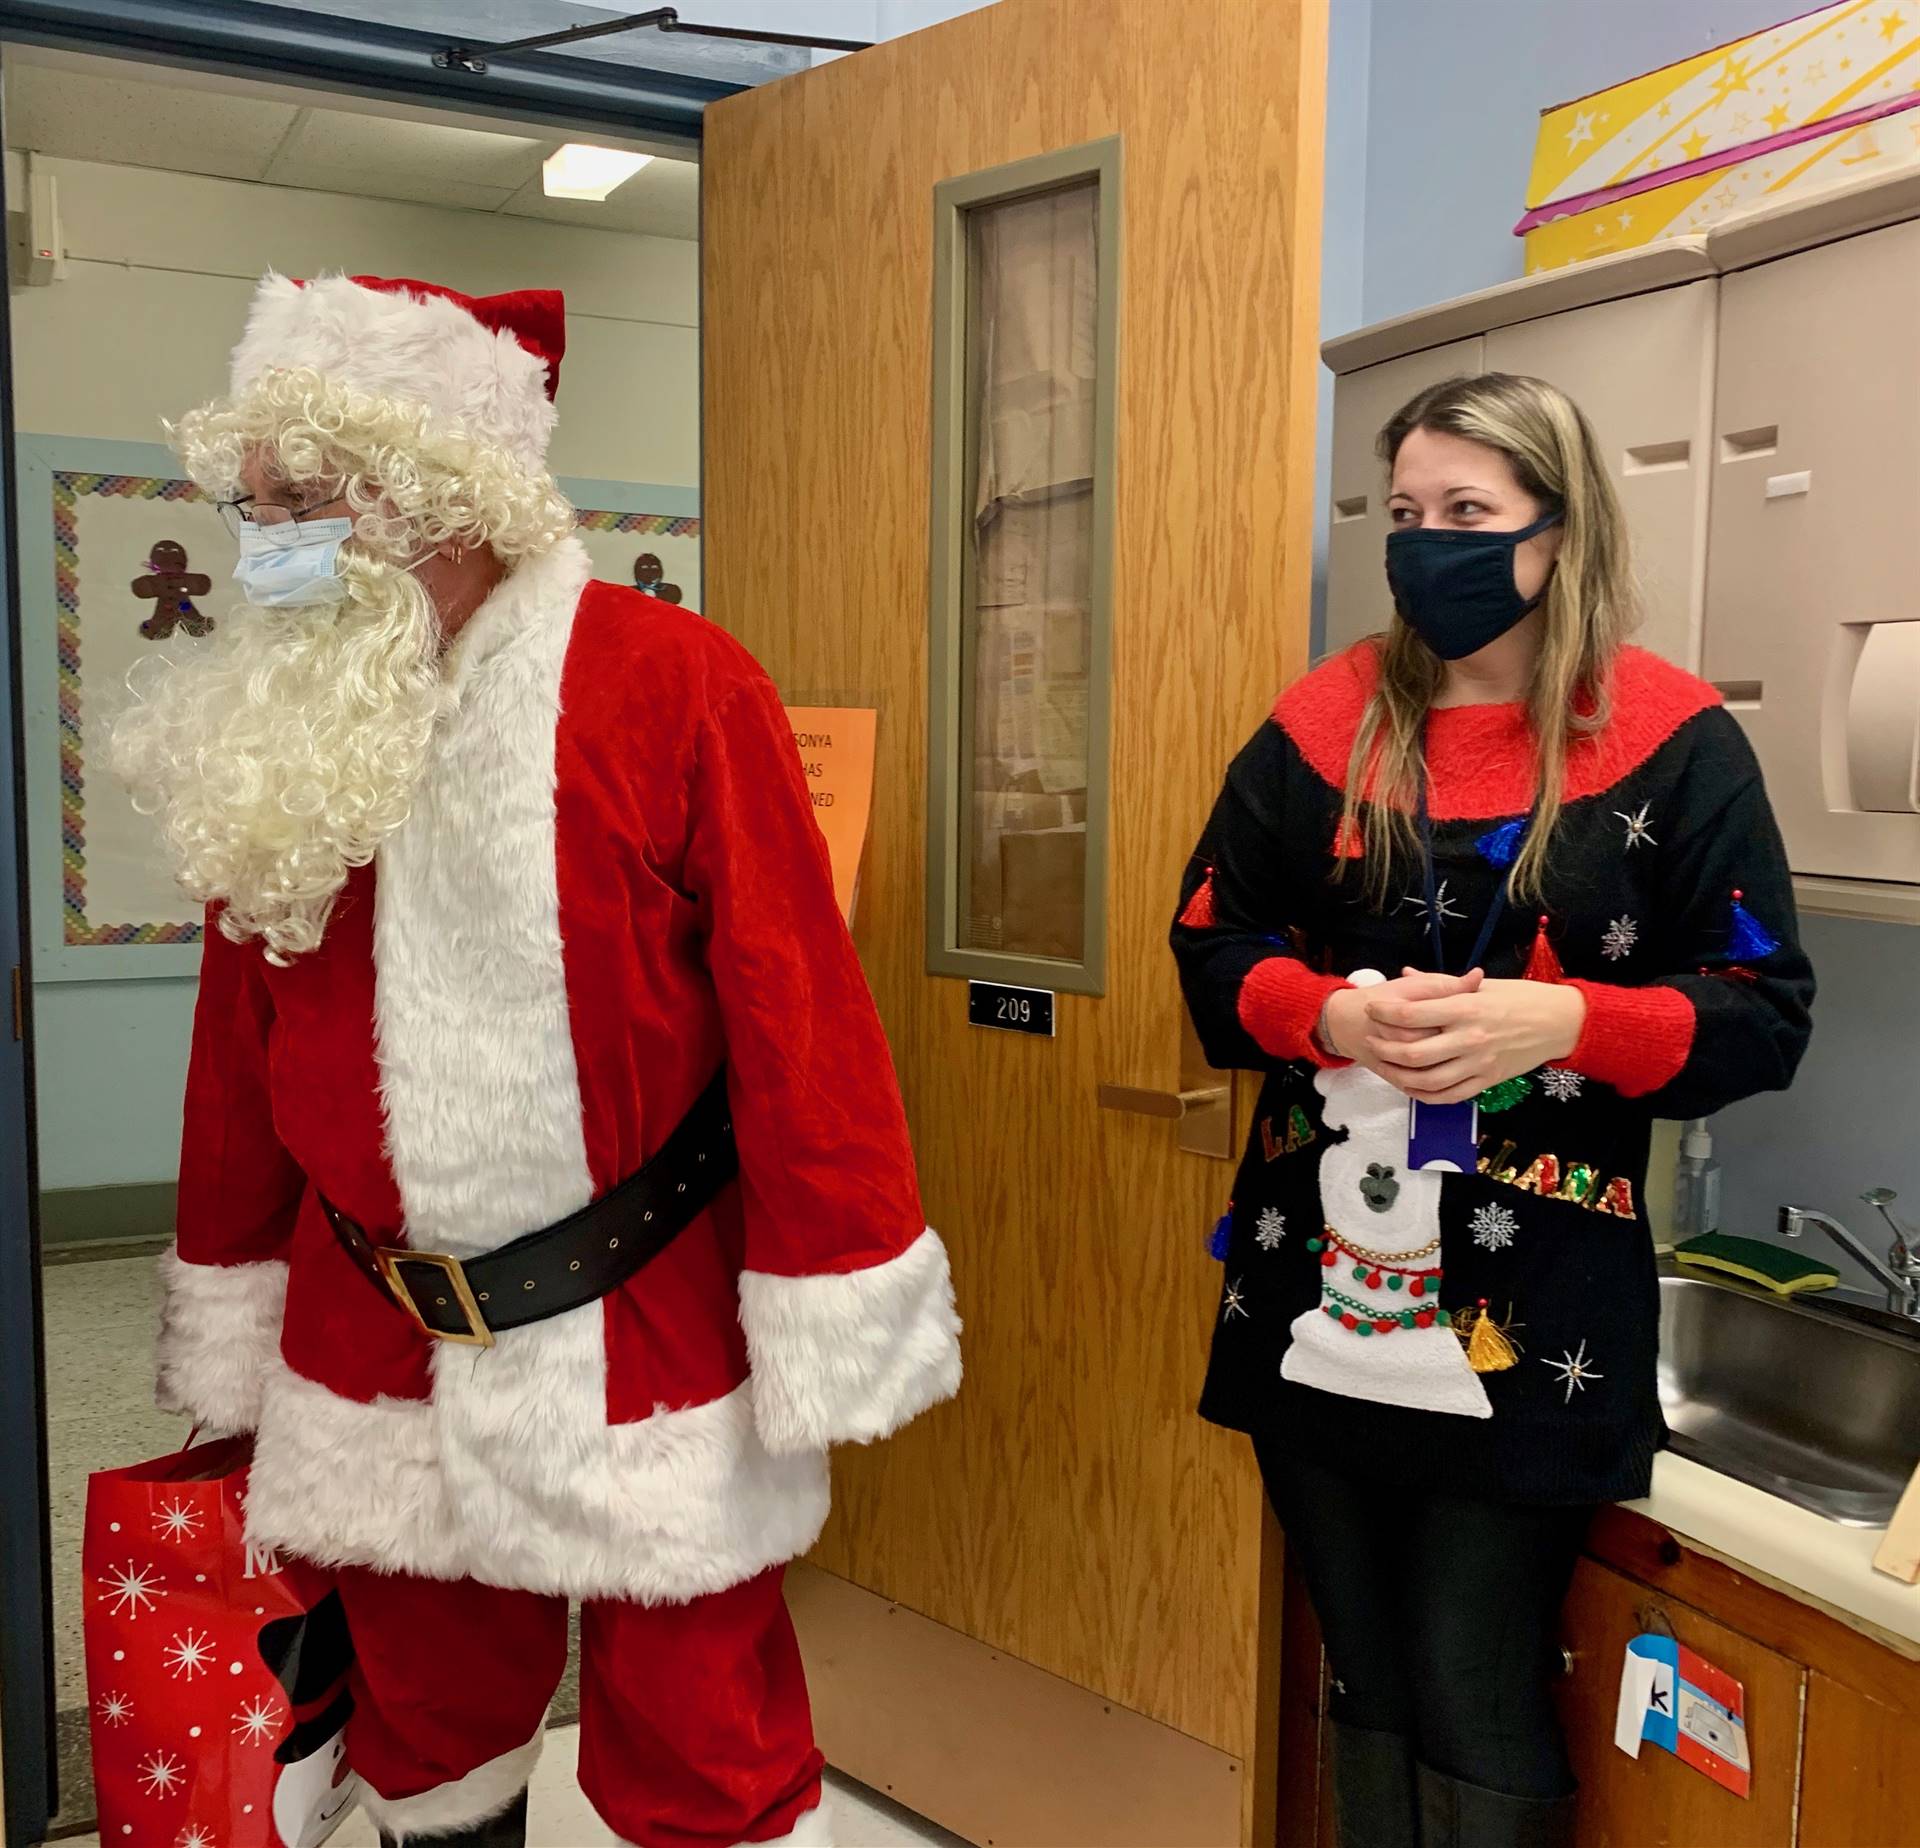 Santa and an elf enter a classroom.